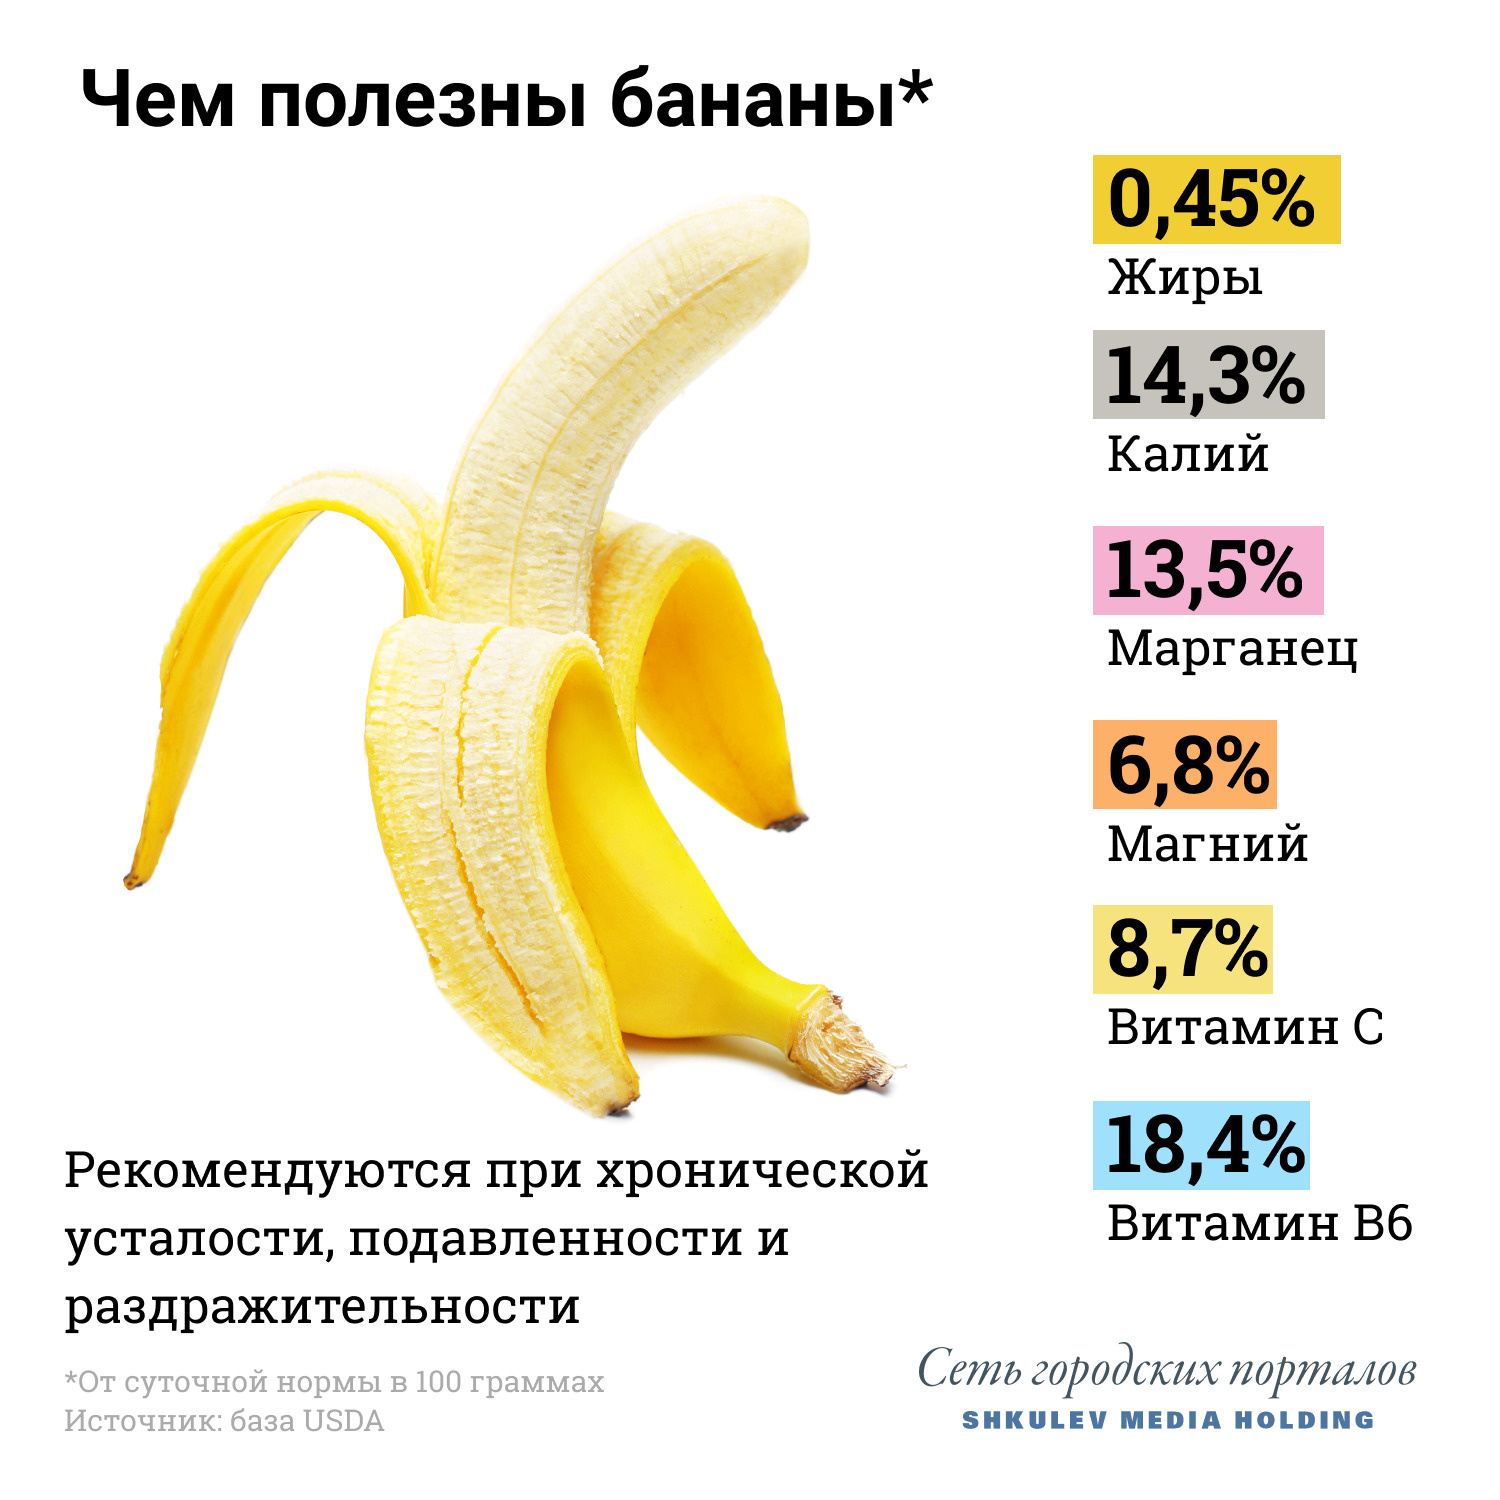 Достаточно съедать по банану в день, чтобы получать от него только пользу